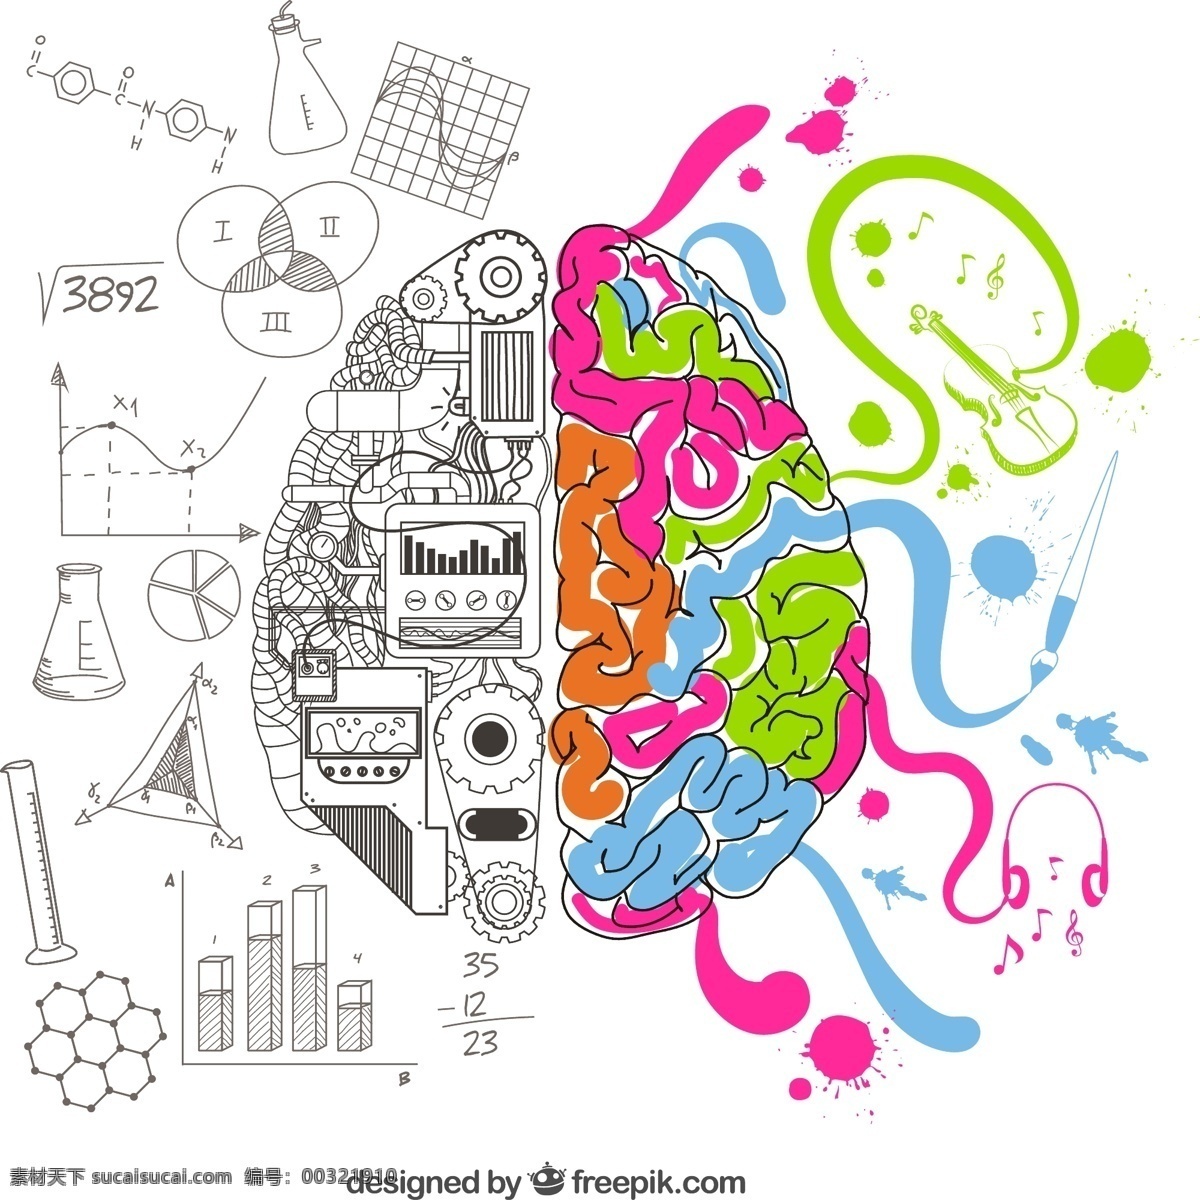 创意 手绘 大脑 半球 涂鸦 风格 绘画 科学 脑 人力 插图 创造力 艺术家 想象力 智力 粗略 左 白色